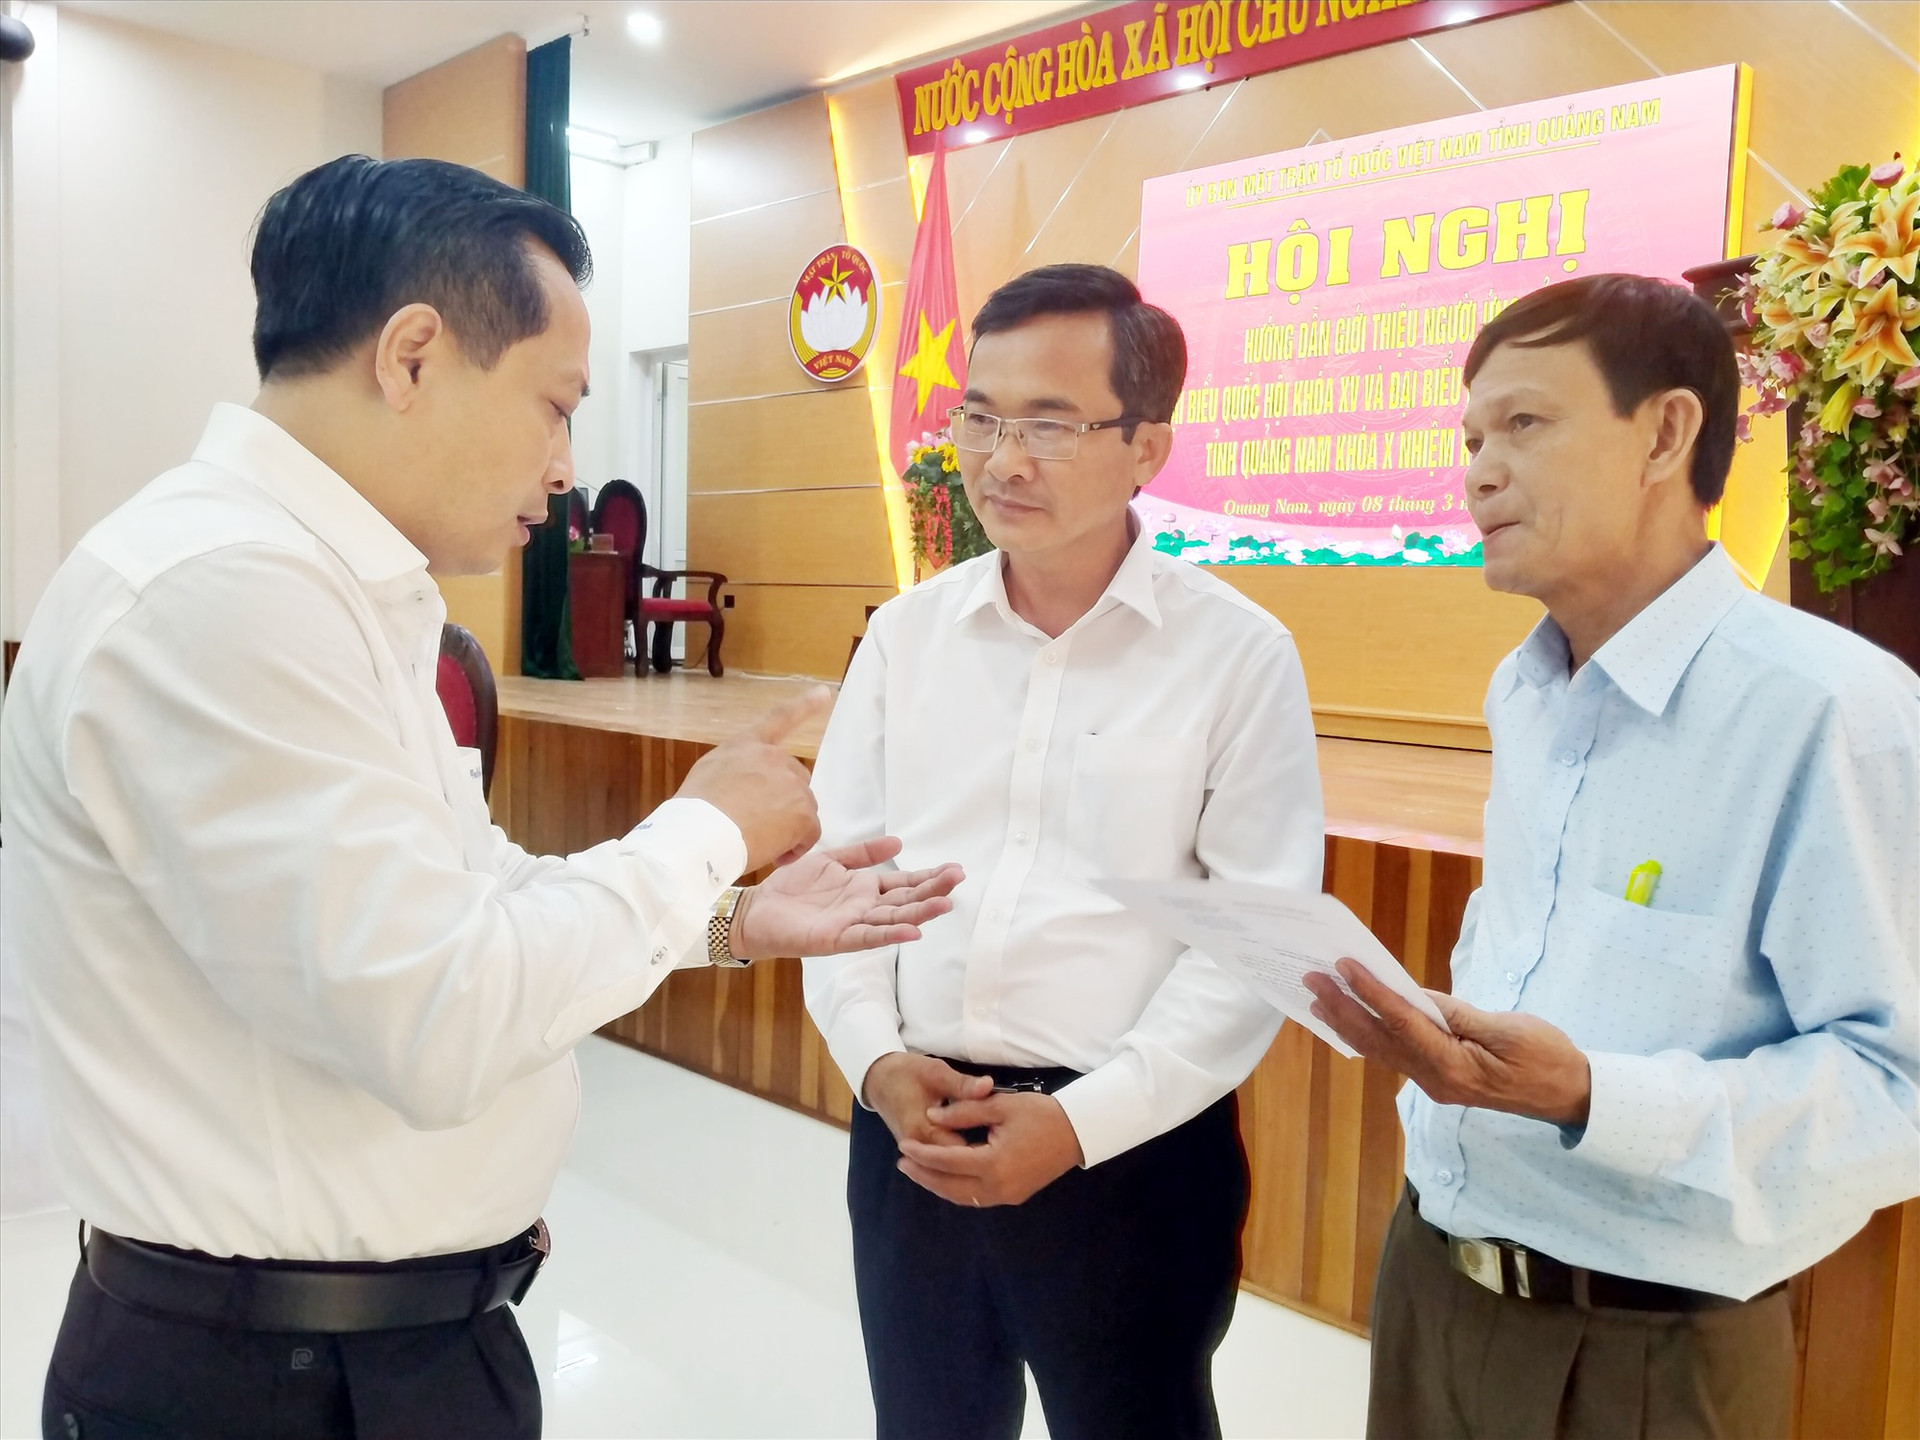 Phó Chủ tịch Thường trực Ủy ban MTTQ Việt Nam tỉnh Nguyễn Phi Hùng (giữa) trao đổi với các đại biểu dự hội nghị về việc giới thiệu người ra ứng cử ĐBQH khóa XV và đại biểu HĐND các cấp nhiệm kỳ 2021 - 2026. Ảnh: ĐOAN VINH